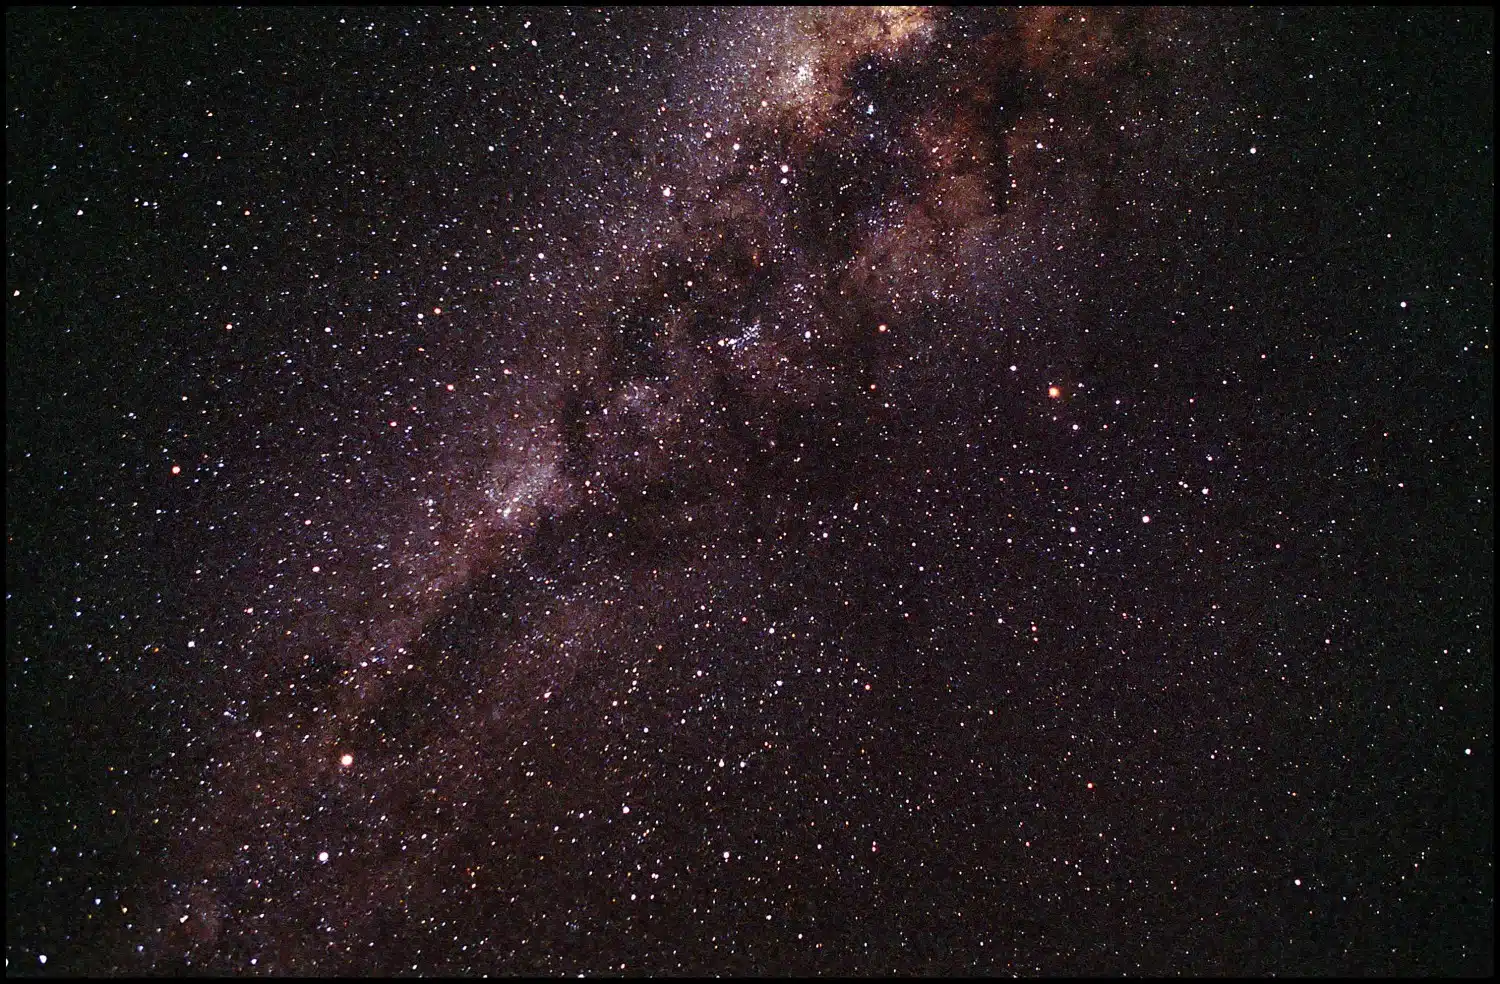 Night Sky in the Atacama Desert